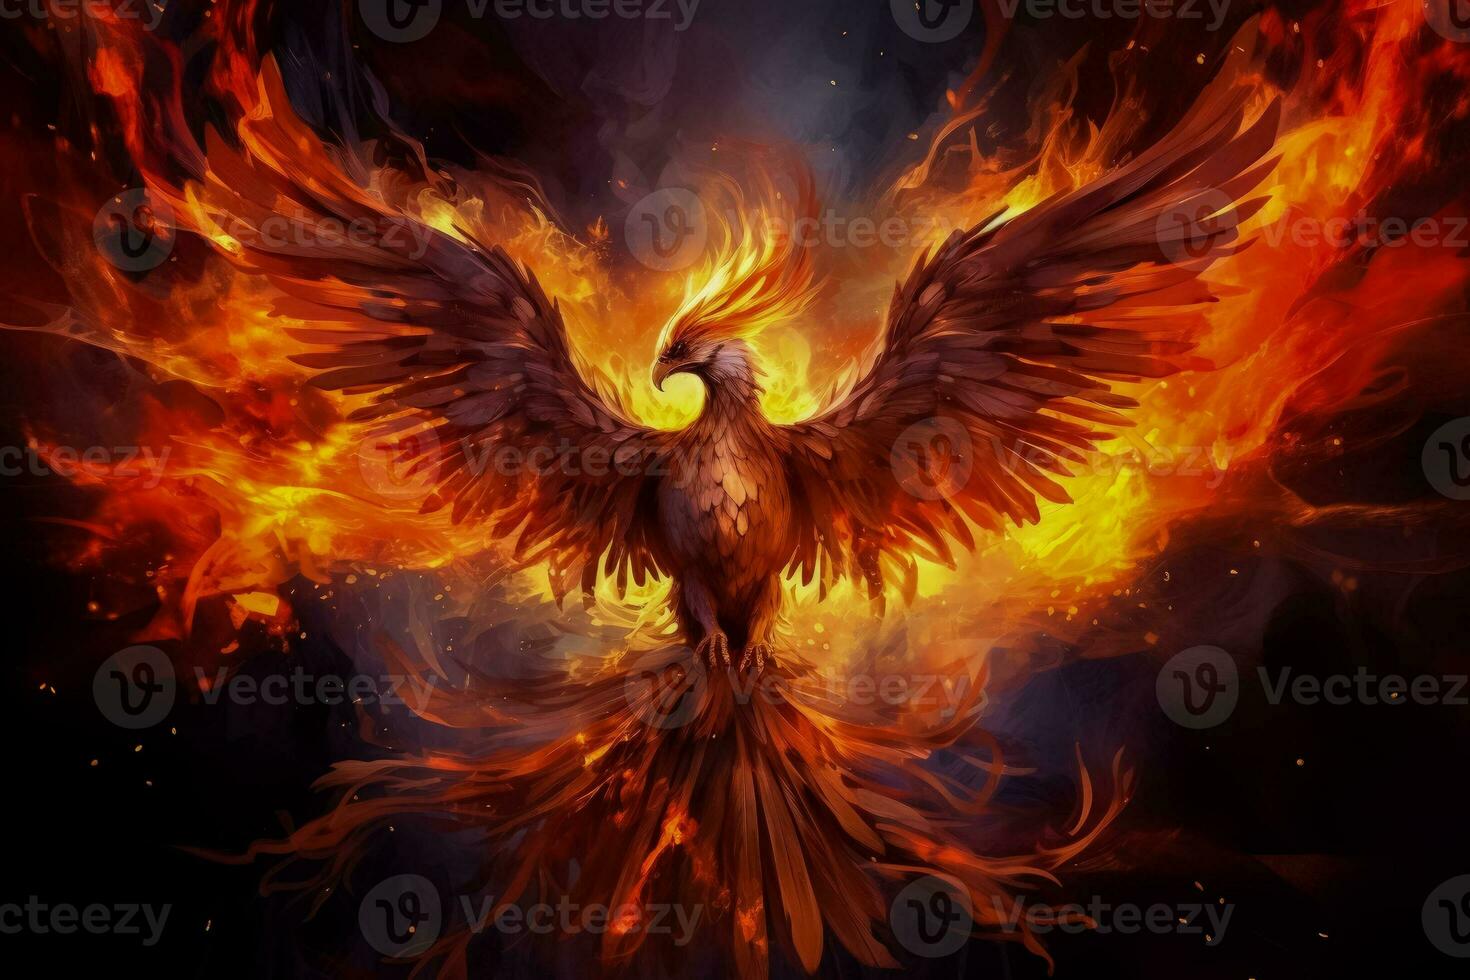 mythisch flammend Phönix Feuervogel Funken und Flammen auf feurig Hintergrund foto